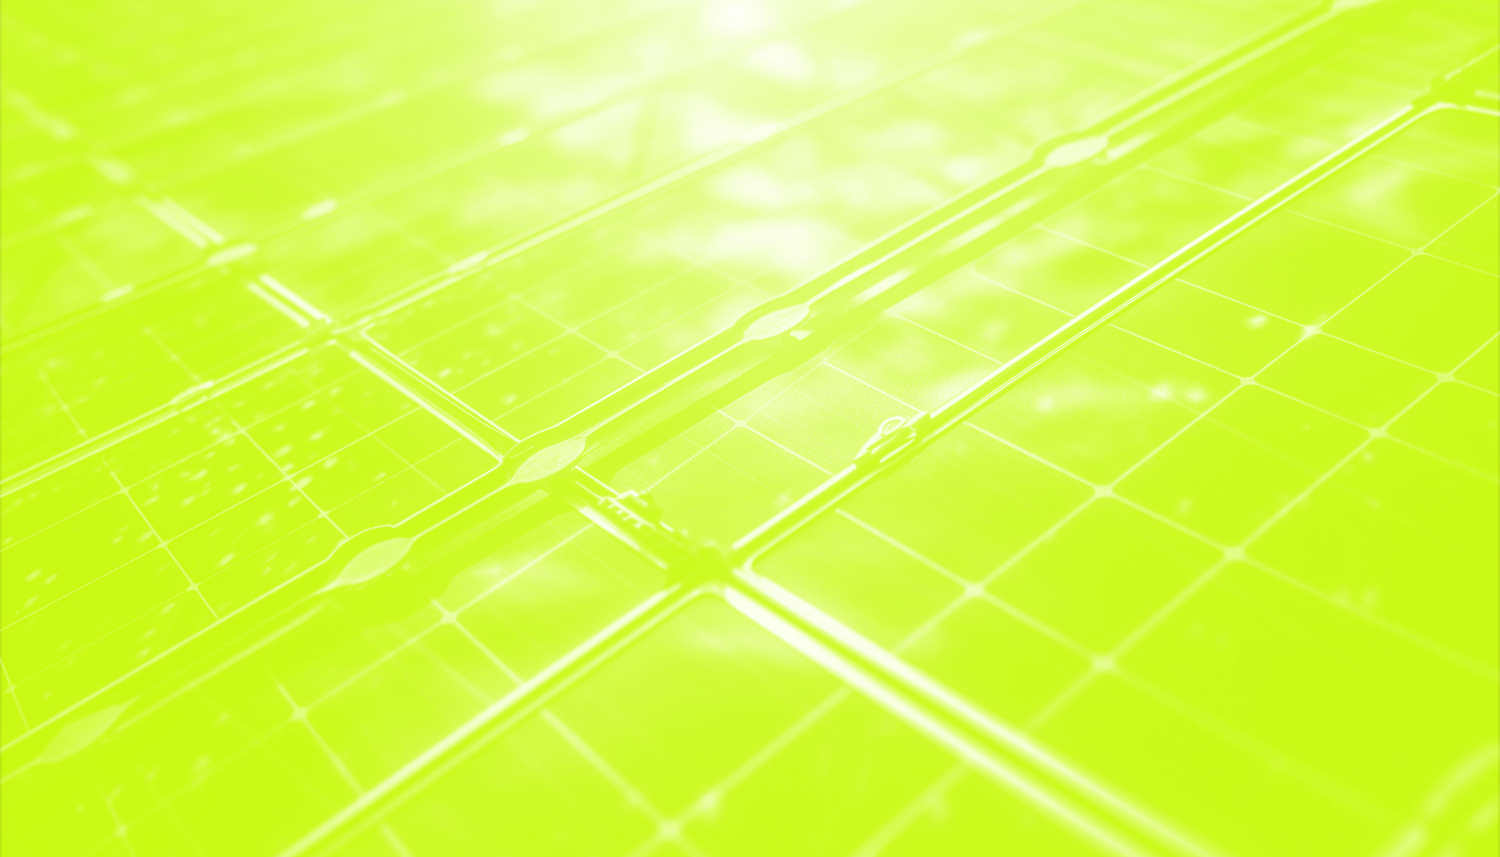 painel placa de energia solar verde